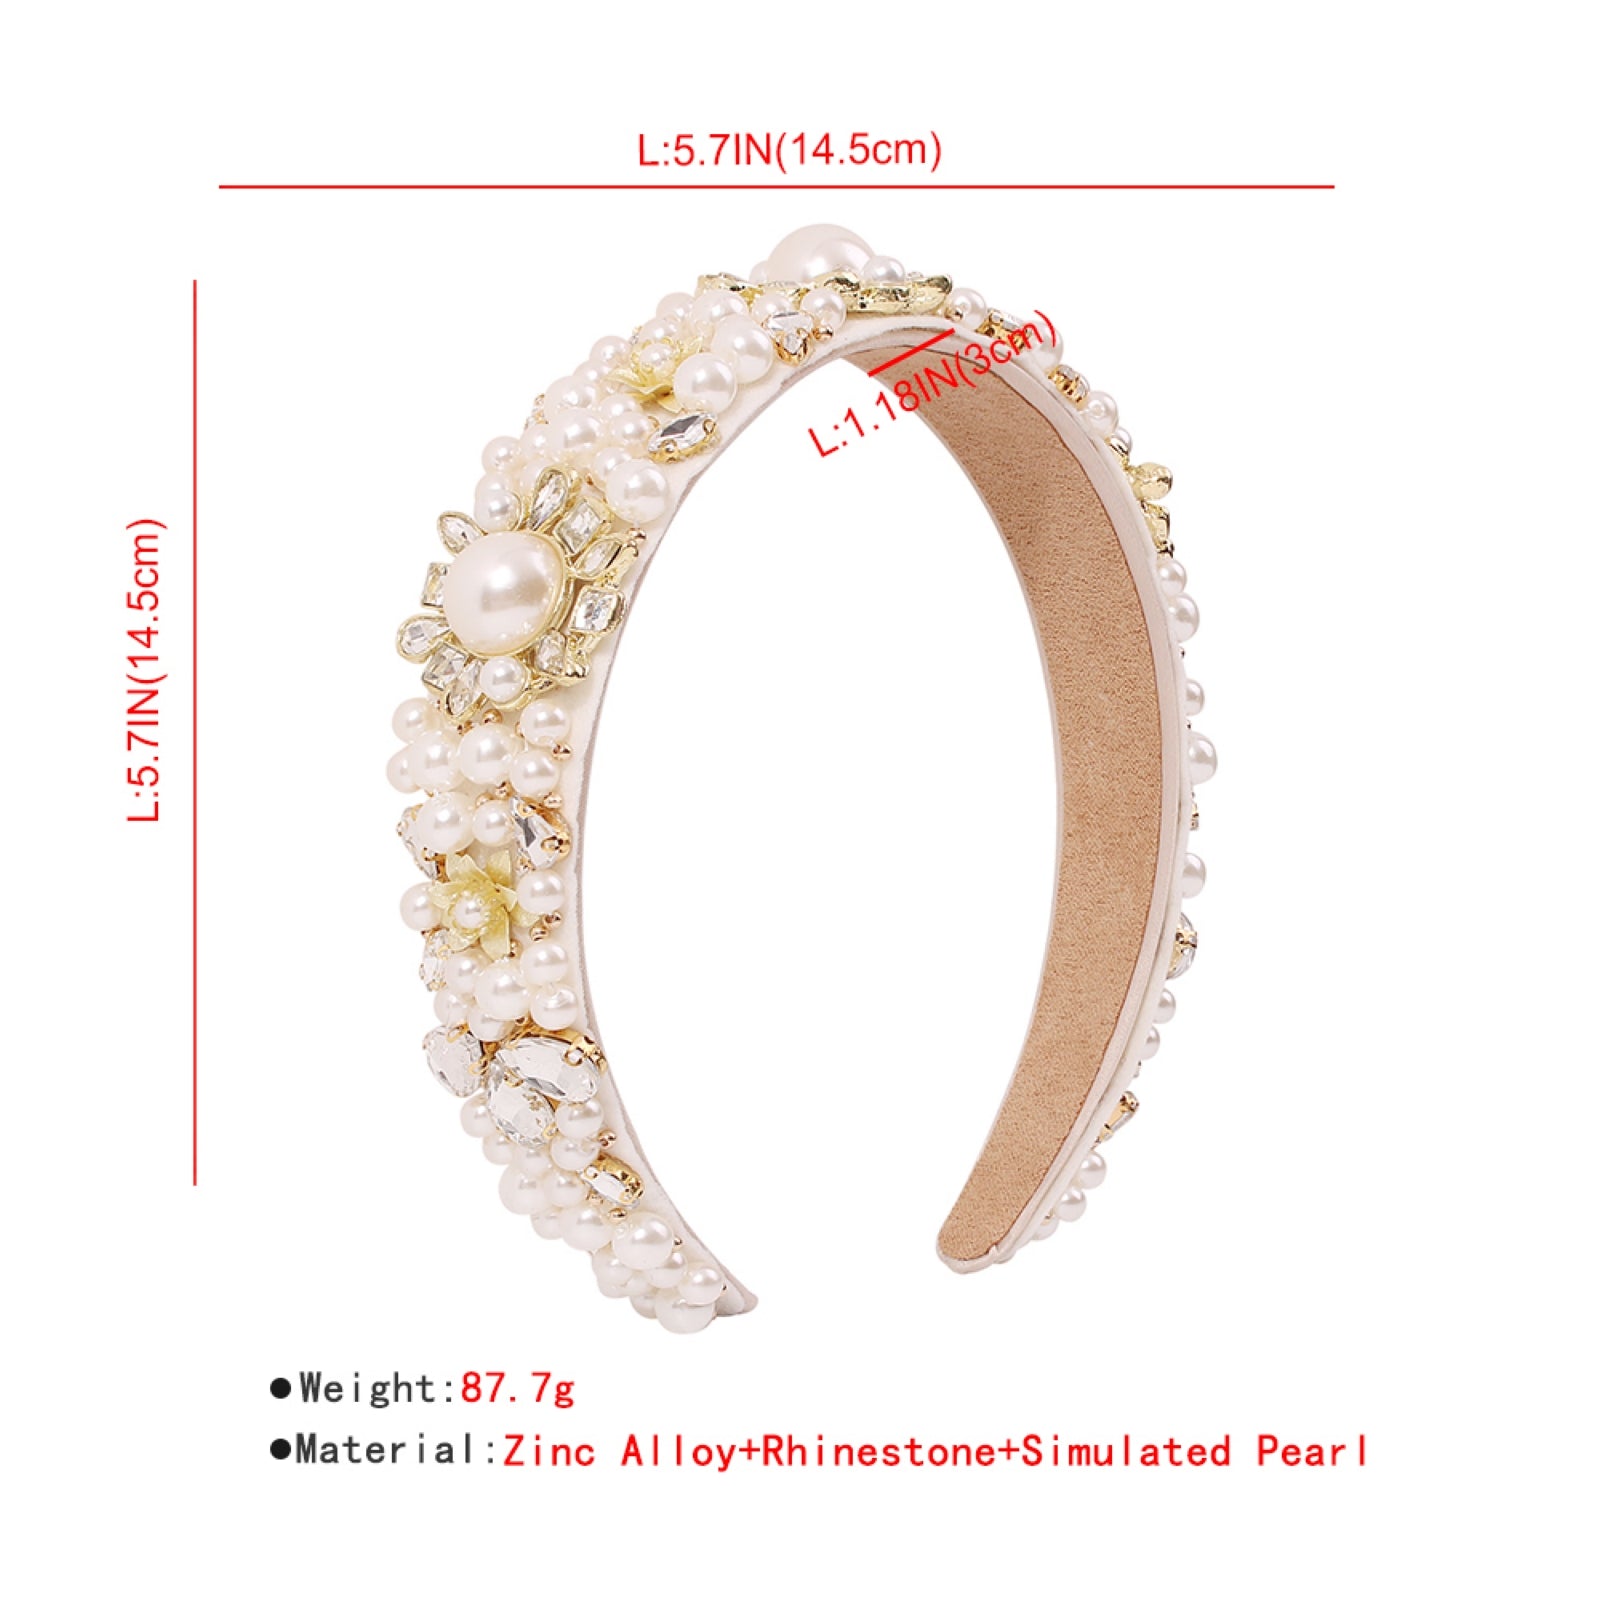 Elegant White Pearl Headband medyjewelry